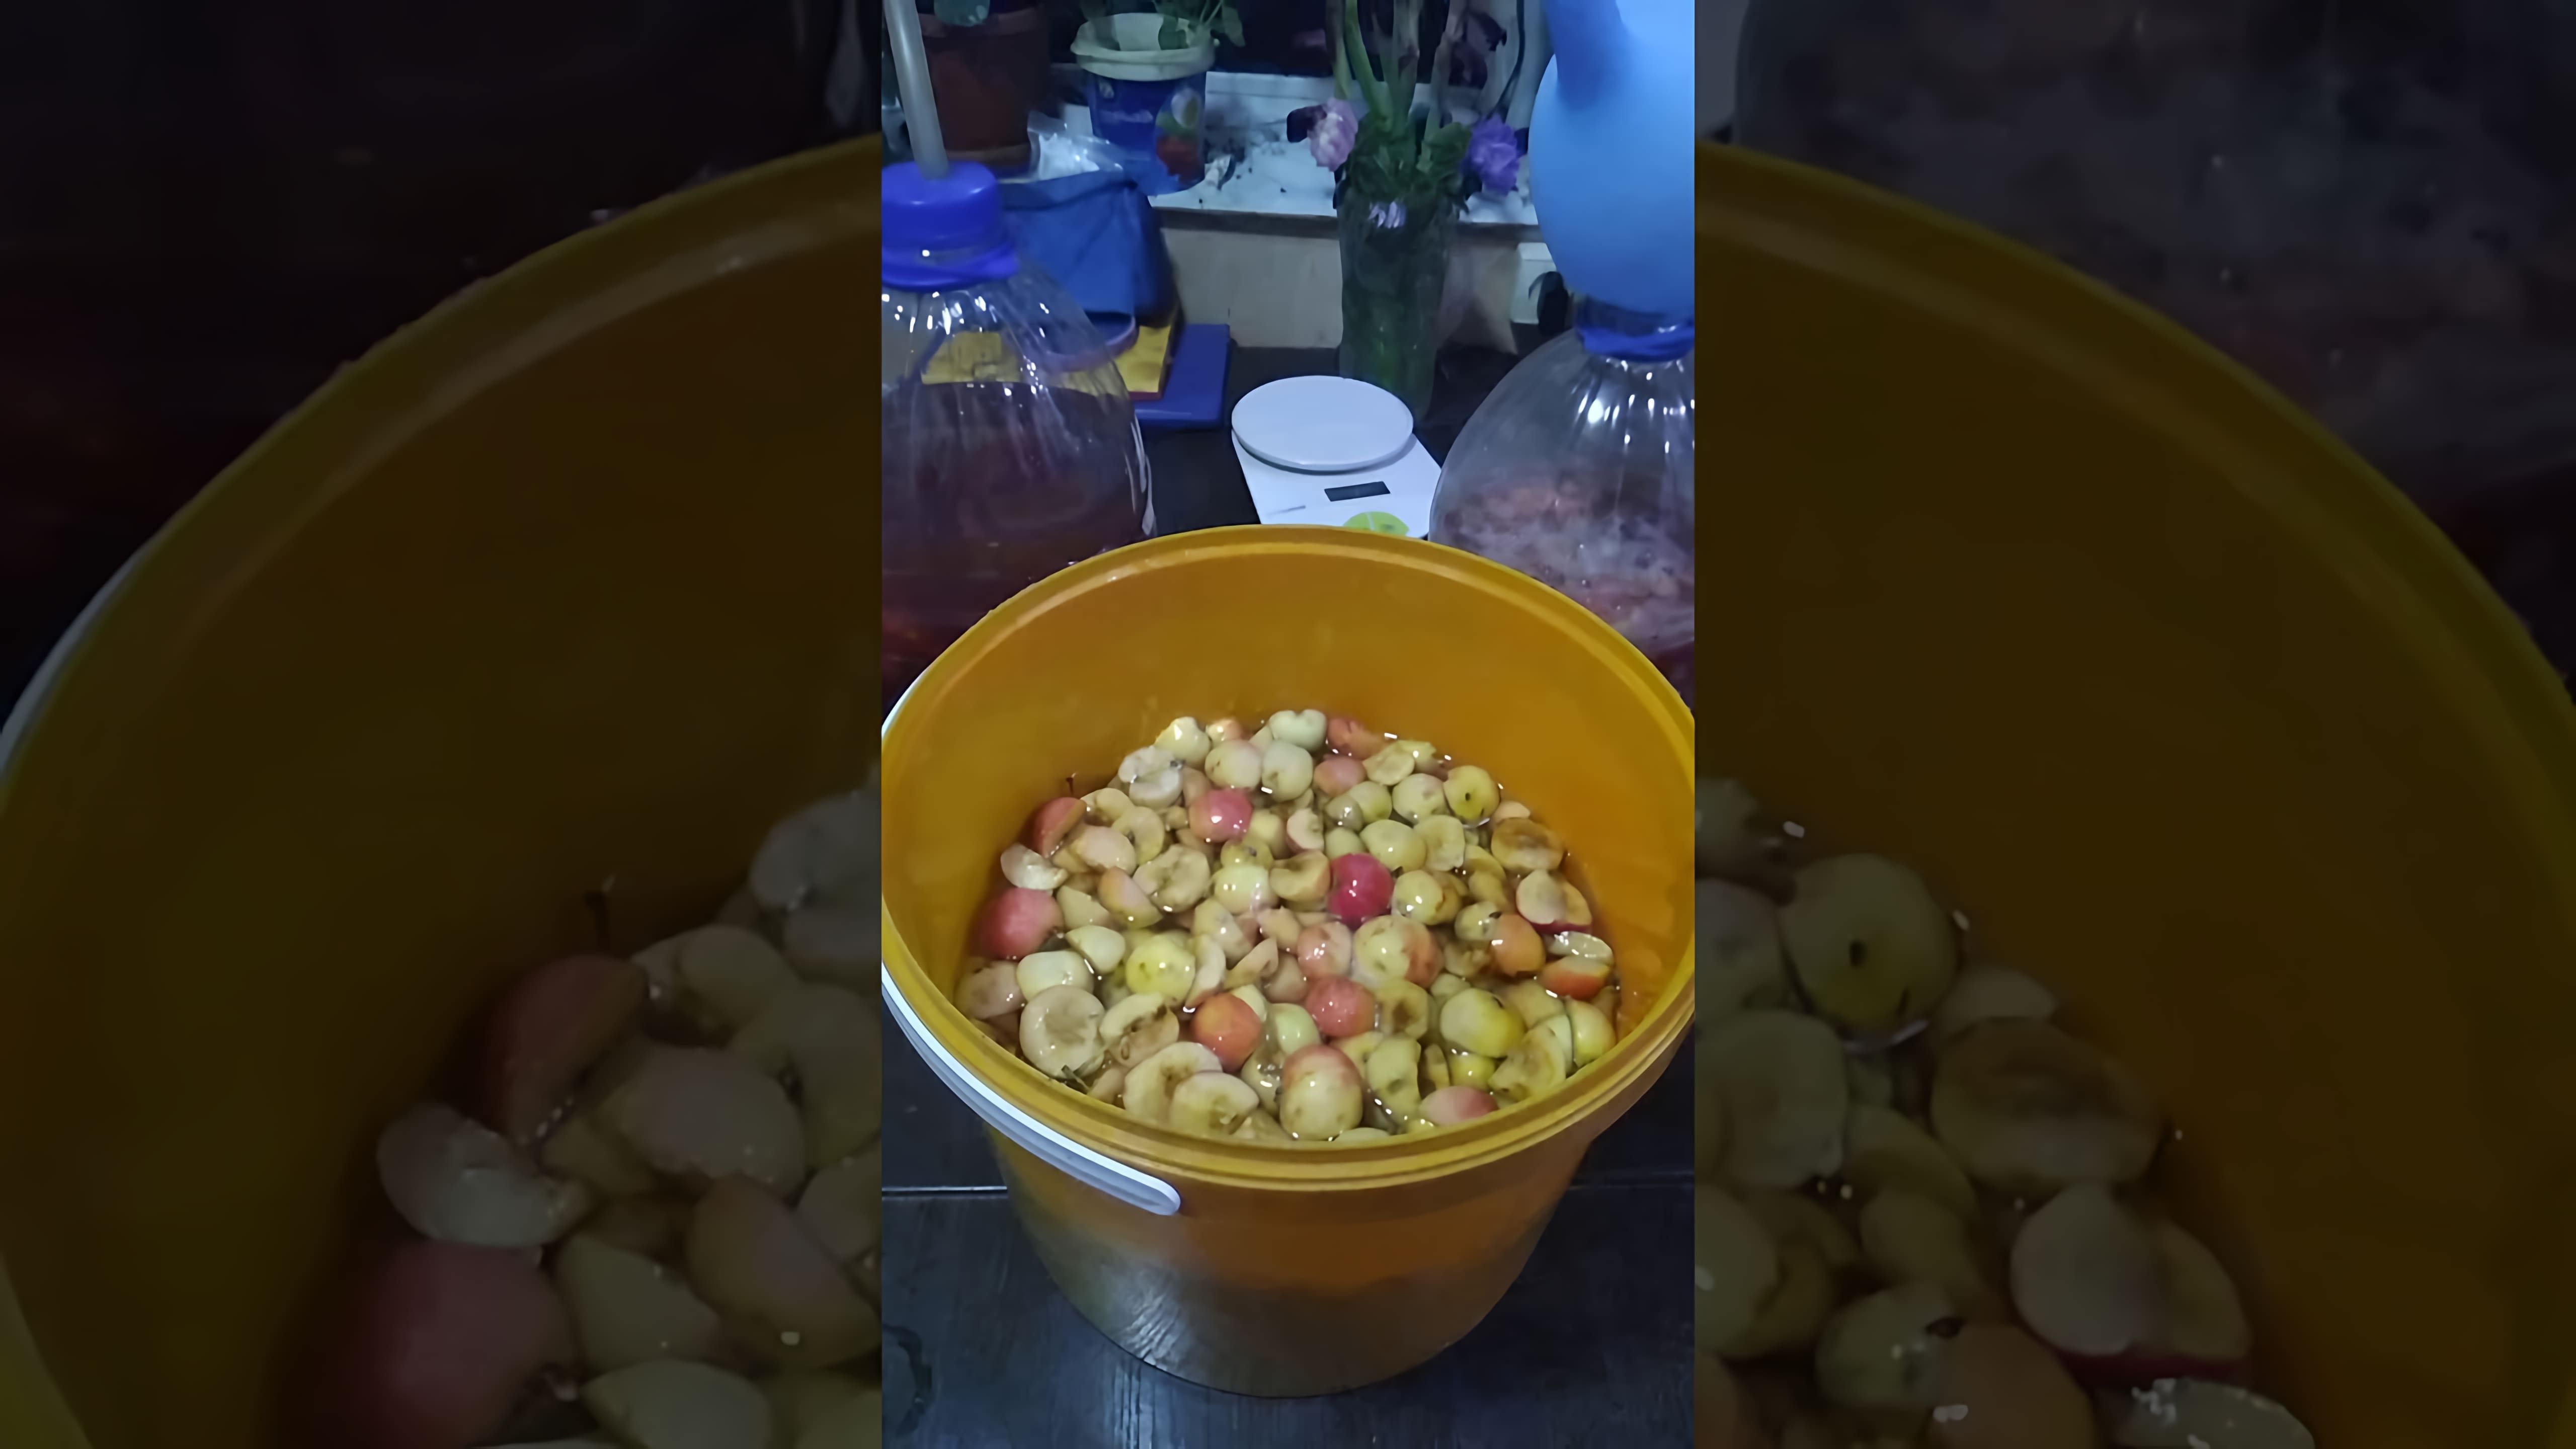 В этом видео демонстрируется процесс приготовления домашнего яблочного сидра из ранеток